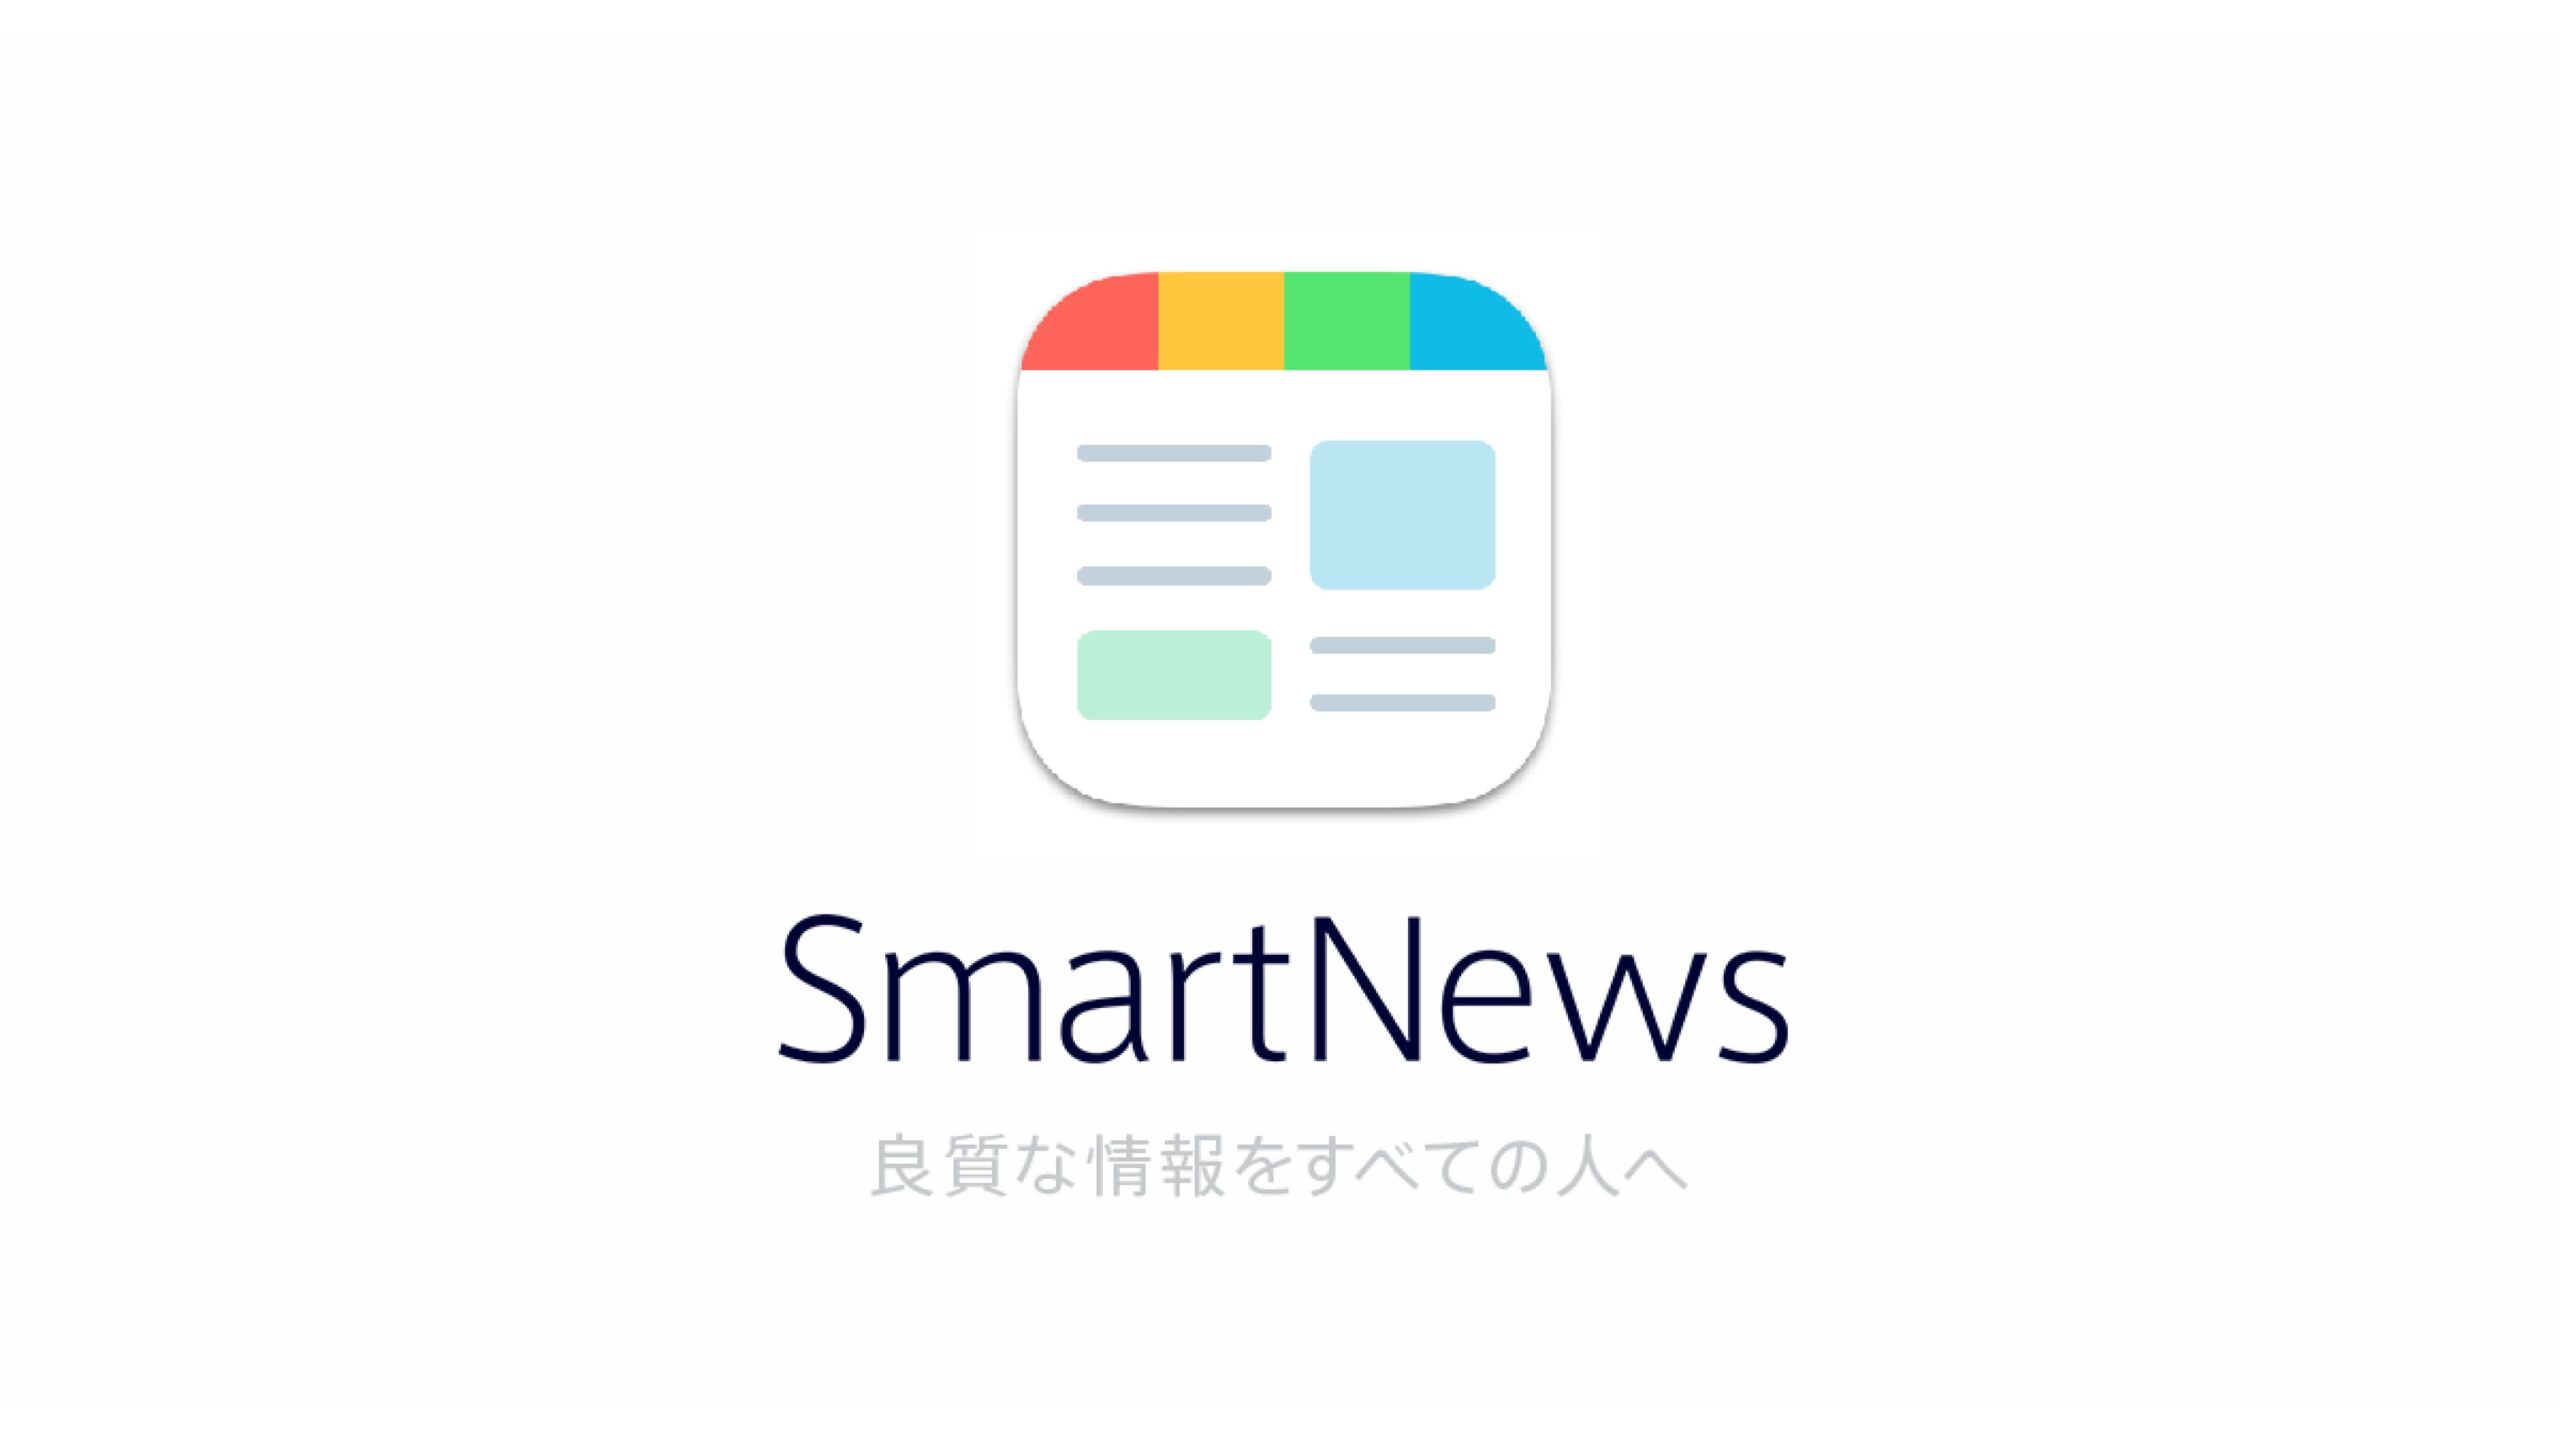 ニュースアプリ「SmartNews」を運営するスマートニュース株式会社が100億円の資金調達を実施